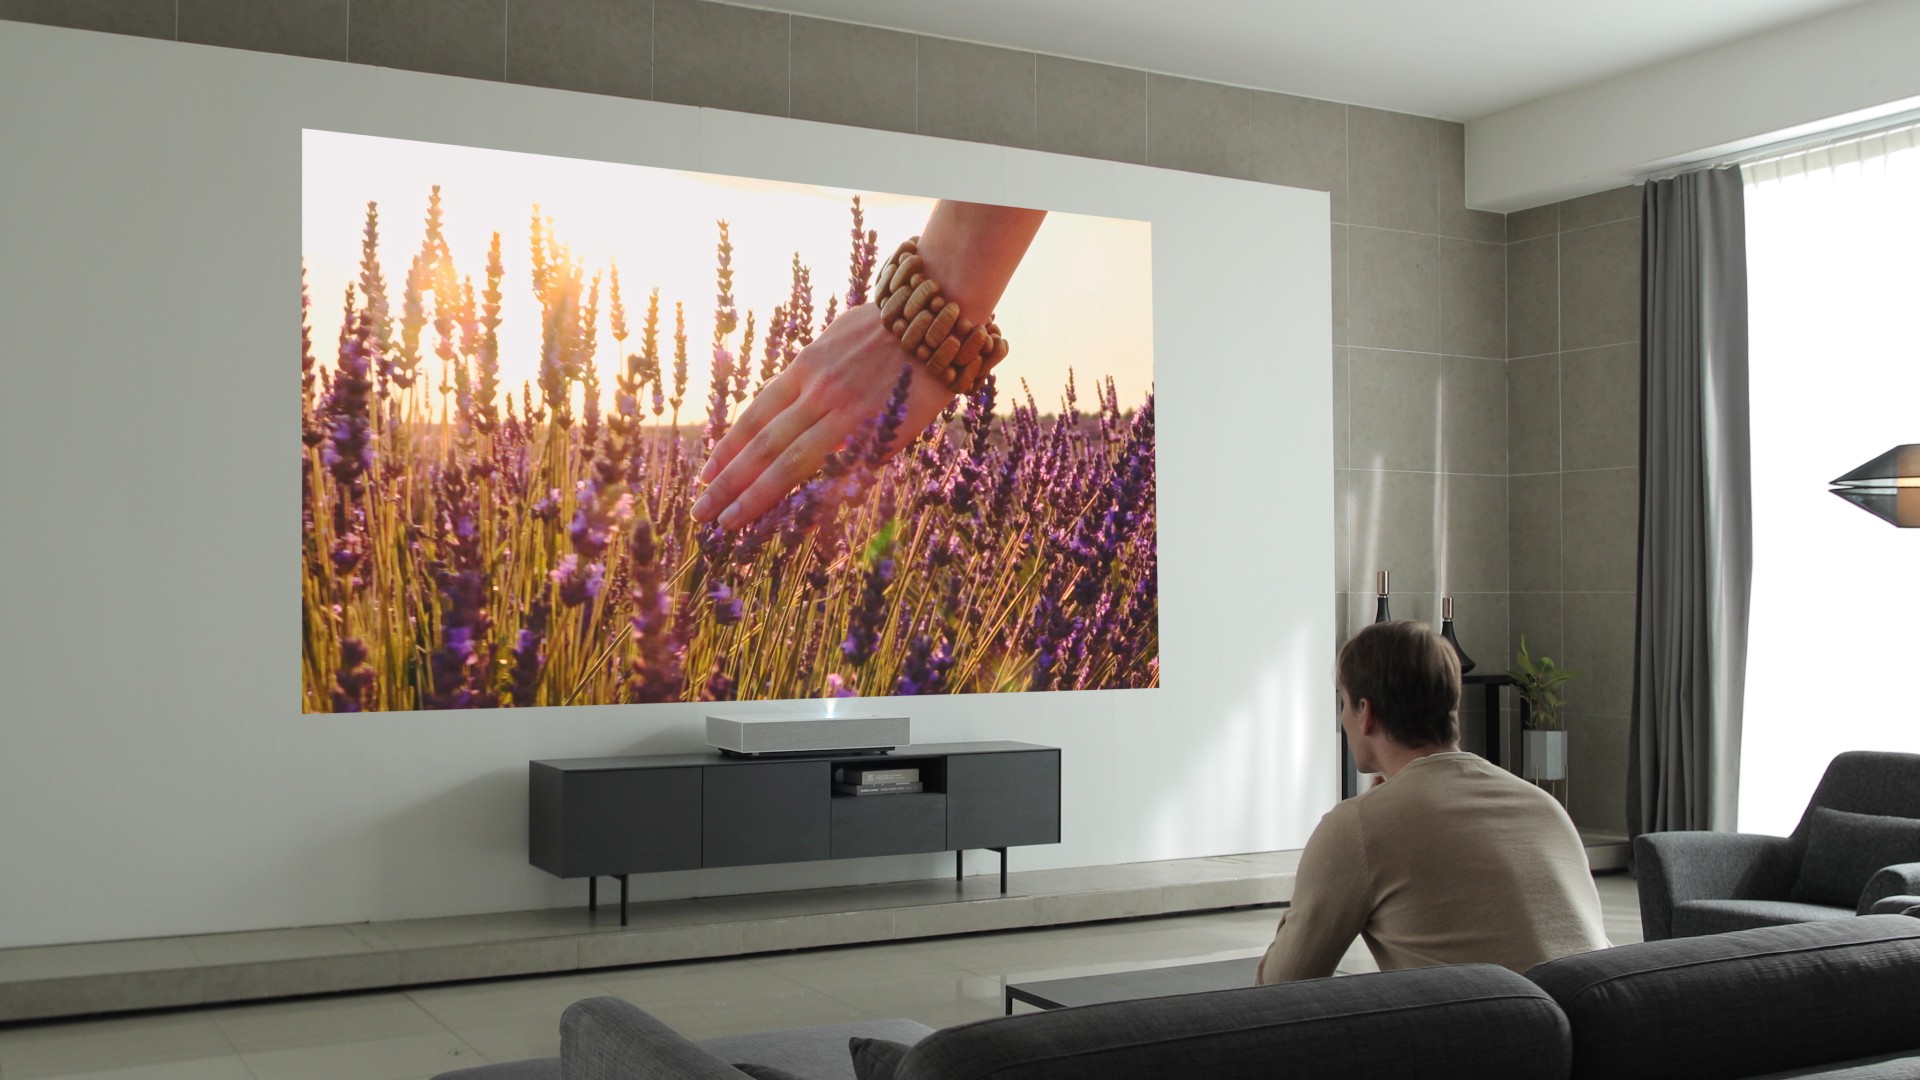 Super projektor klarer 120 tommer tv | Leifshows